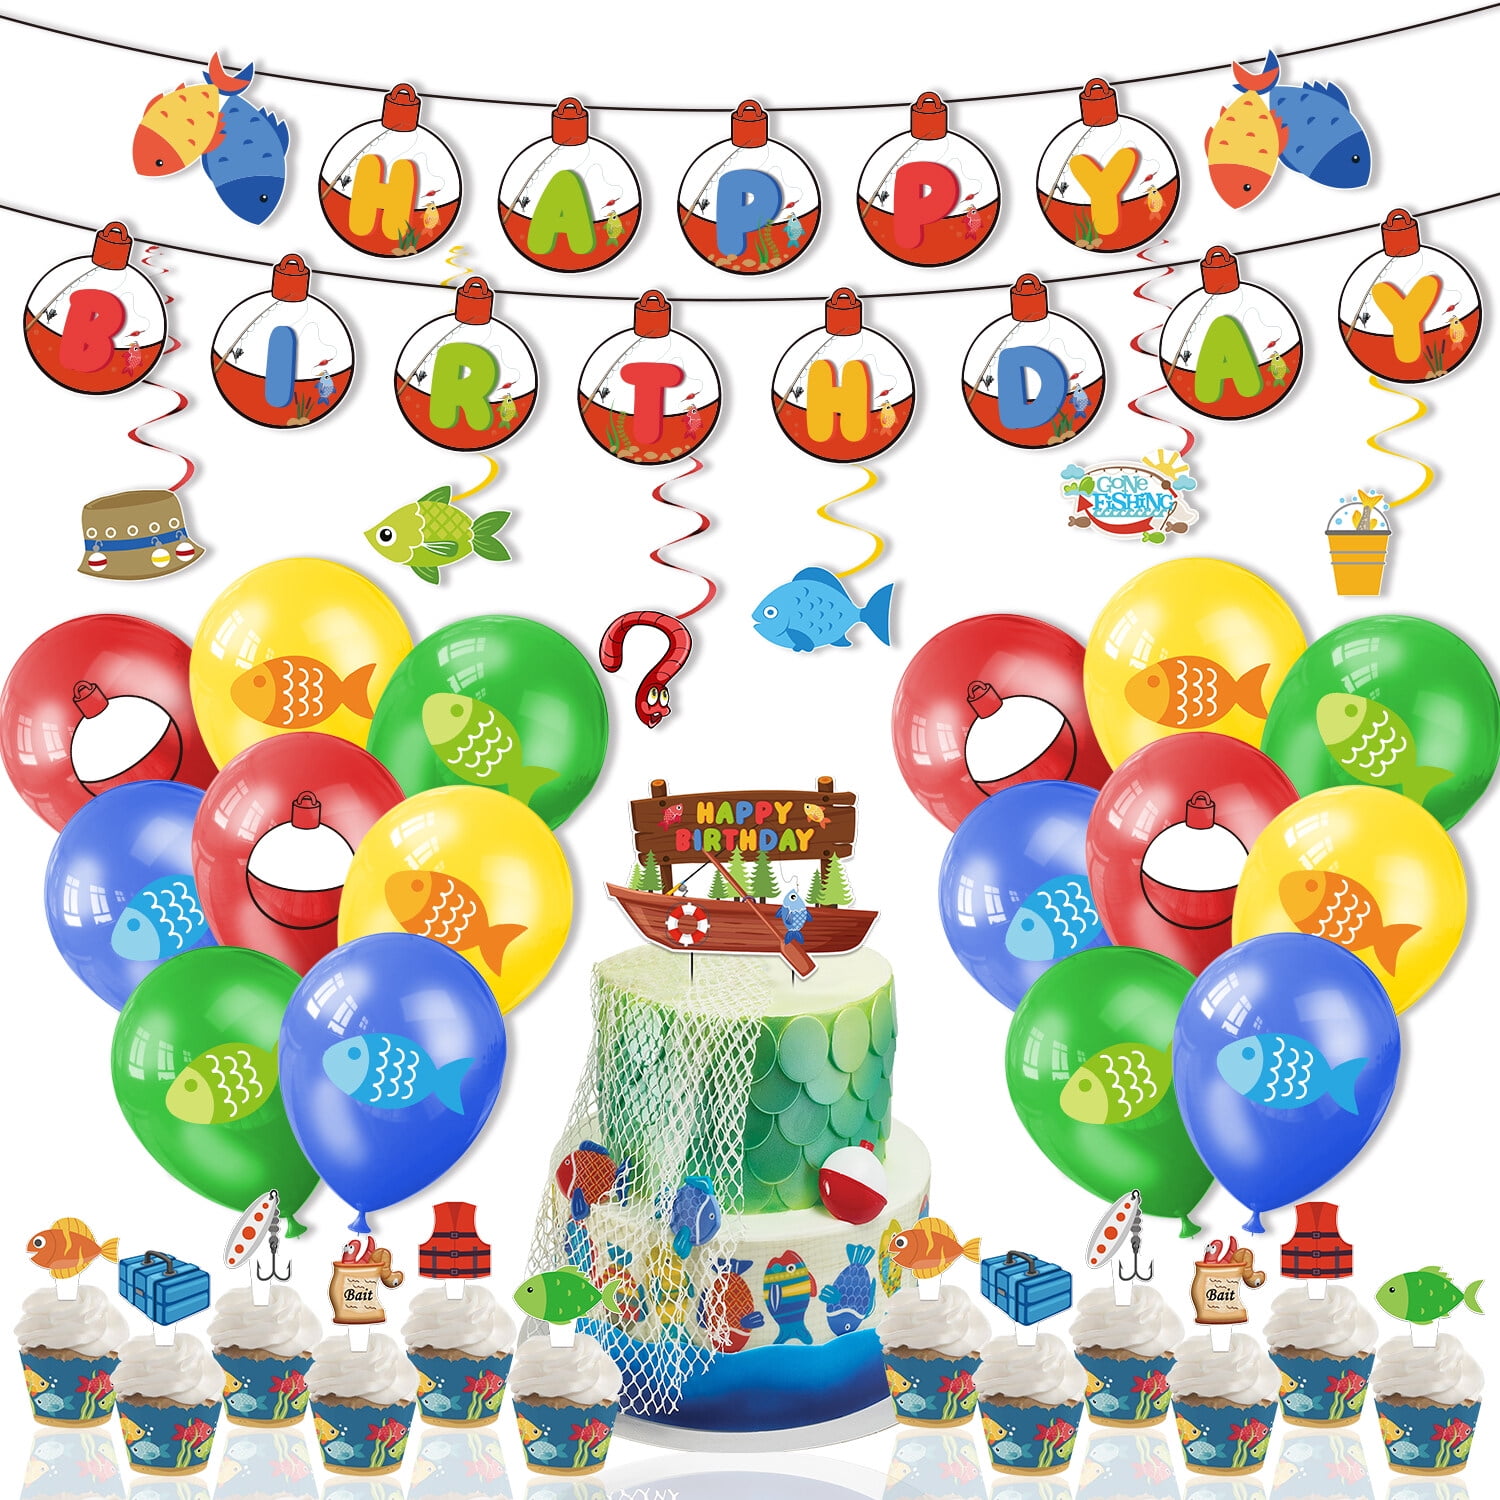 Bass Fish Fishing Birthday Party Balloons Decoration Supplies Camping 12 pcs